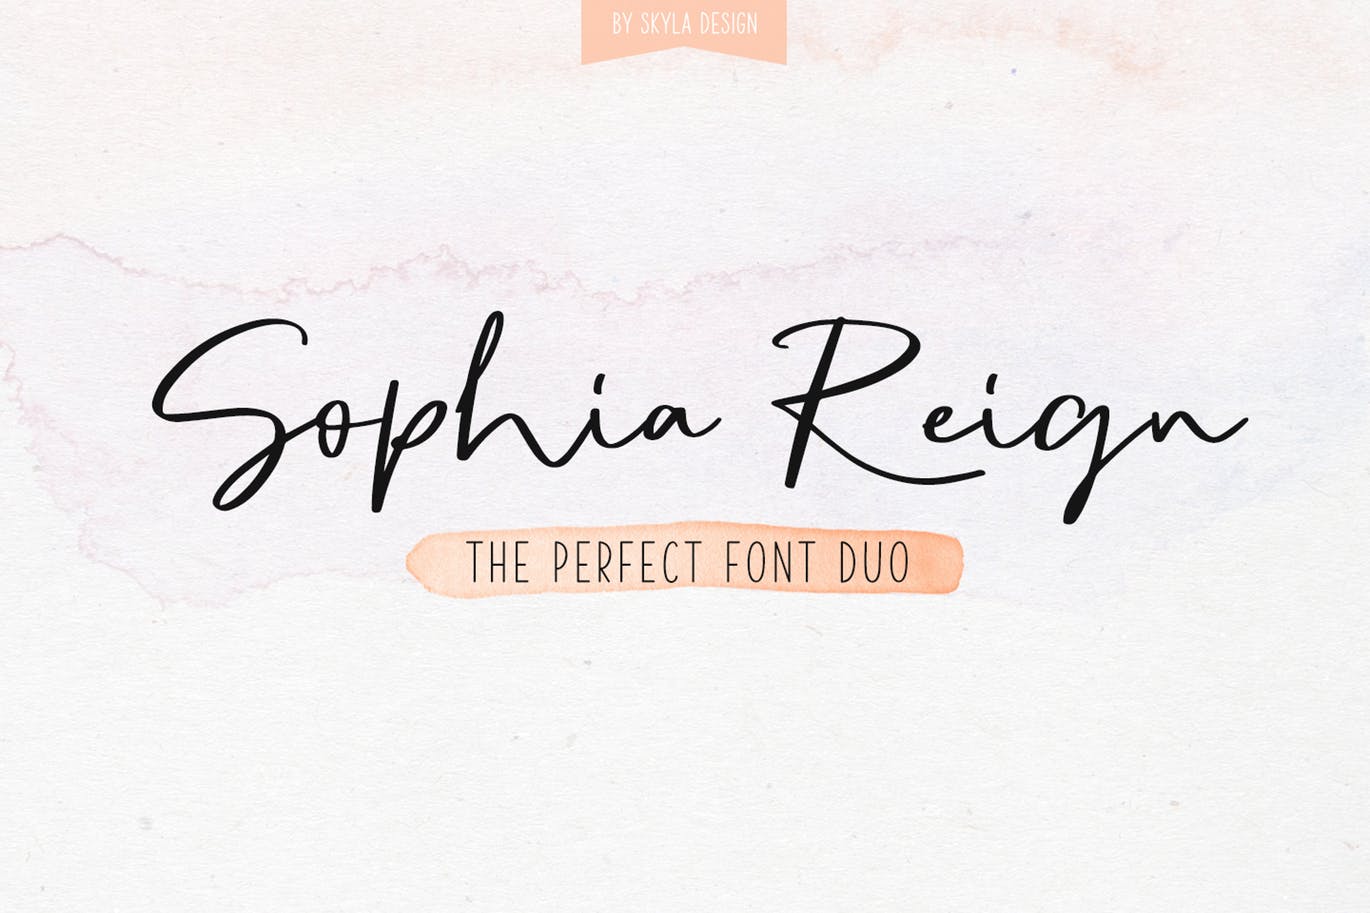 英文钢笔签名字体大洋岛精选&大写字母正楷字体大洋岛精选二重奏 Sophia Reign signature font duo插图